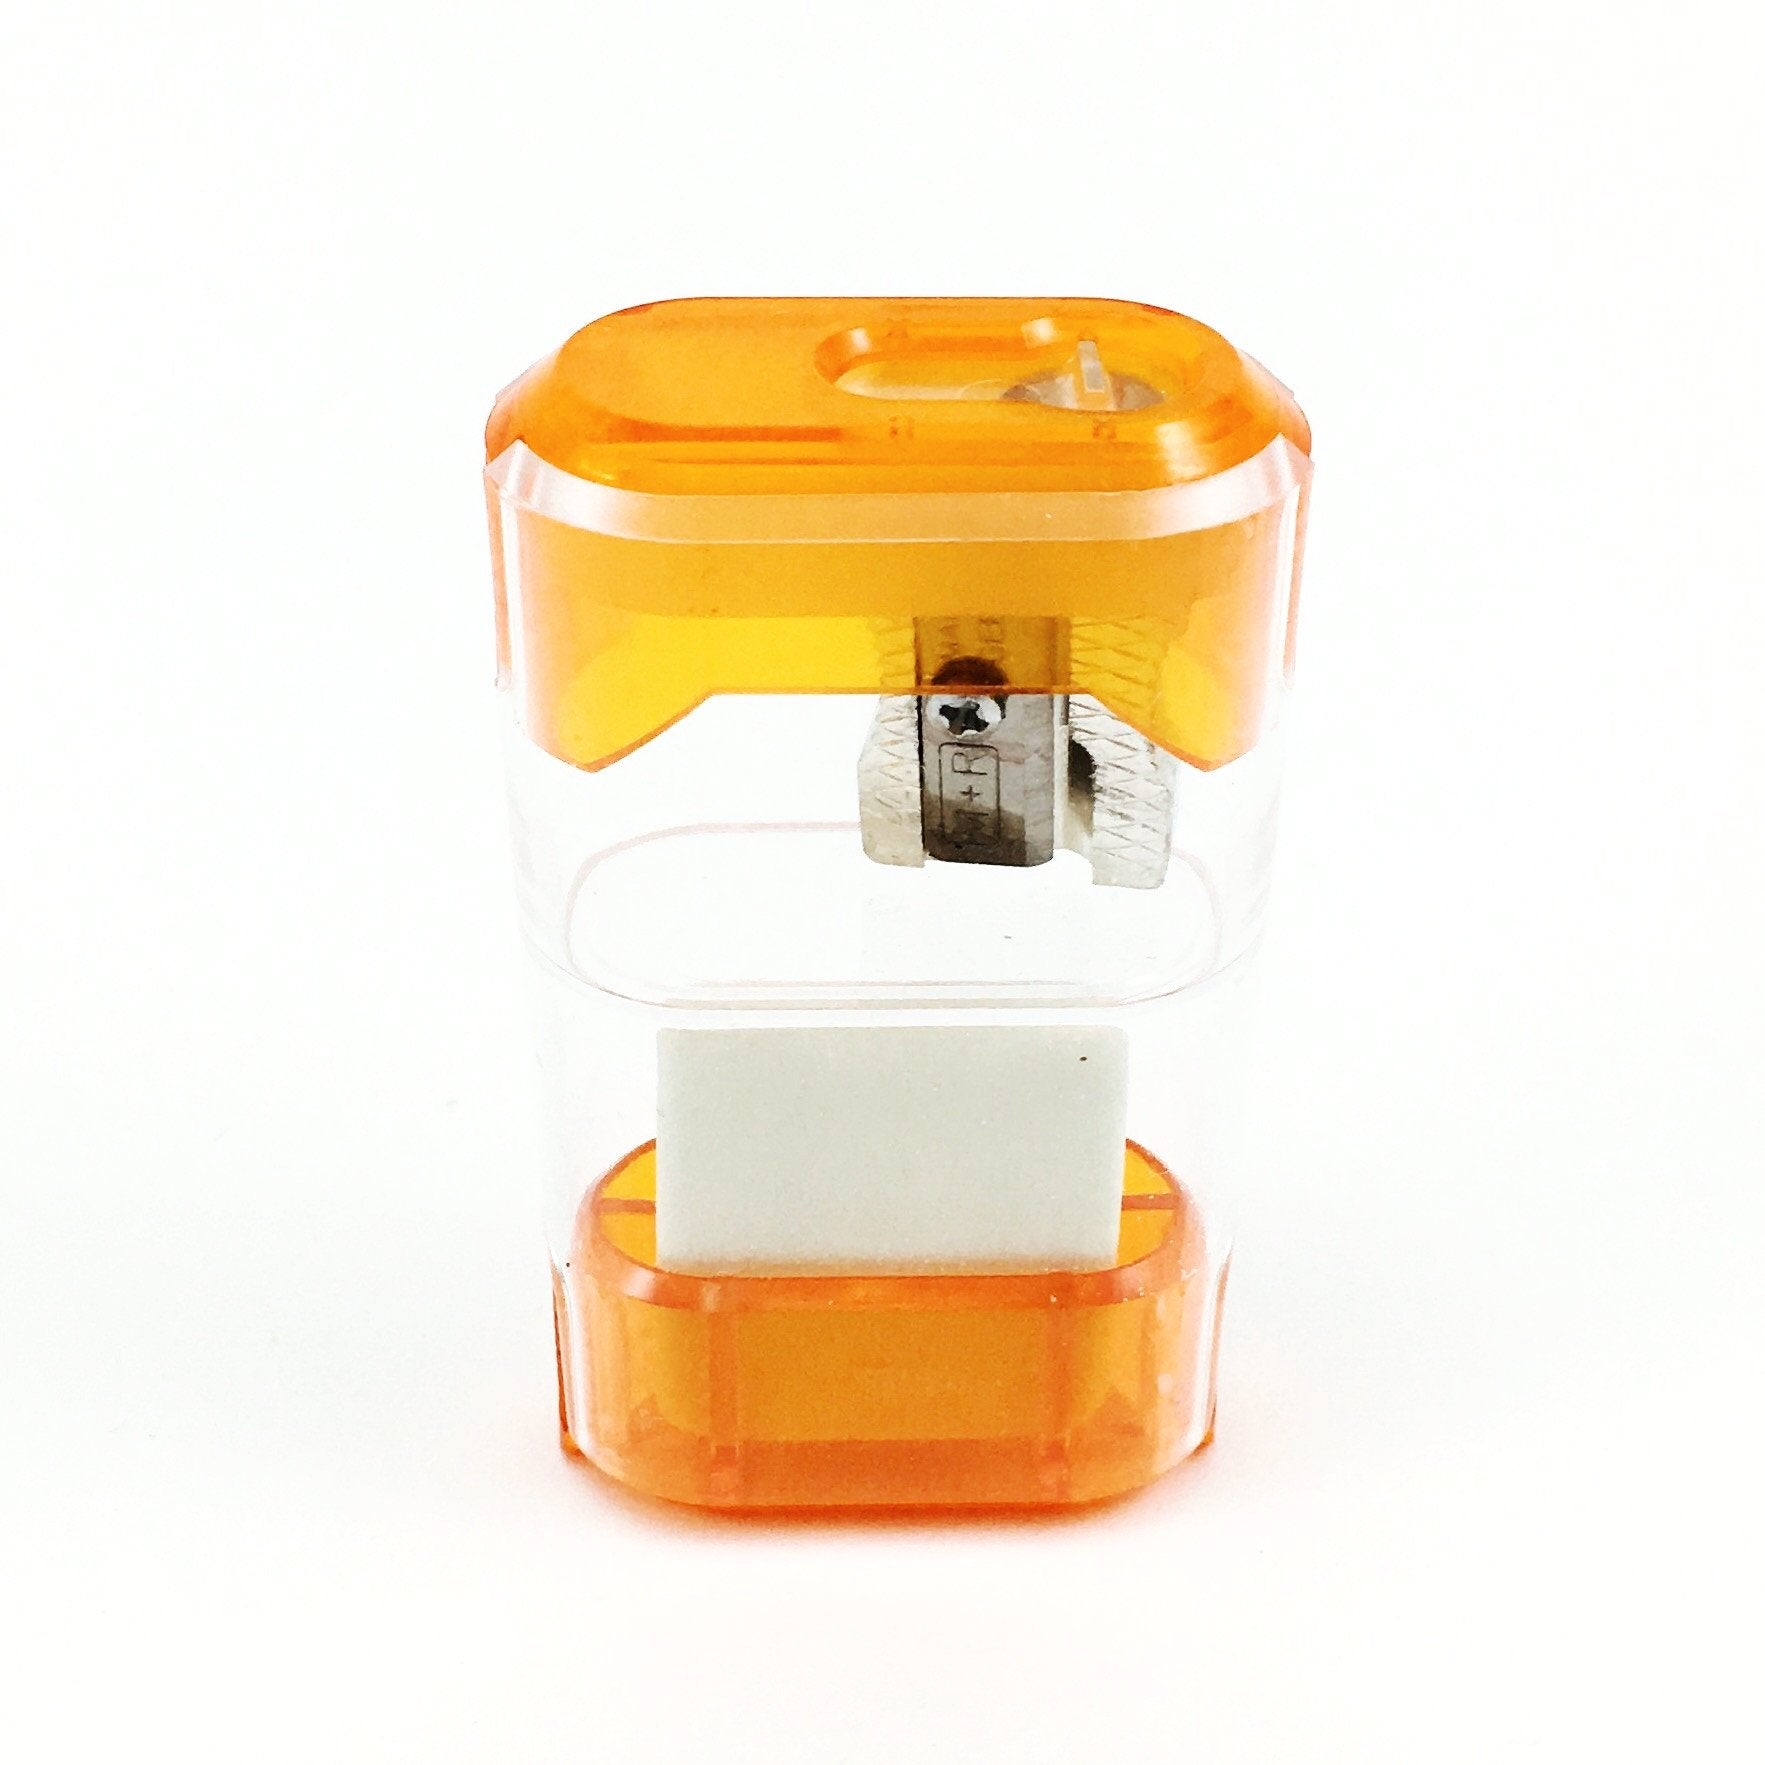 M+R Dual Sharpener and Eraser - Orange by M+R - K. A. Artist Shop